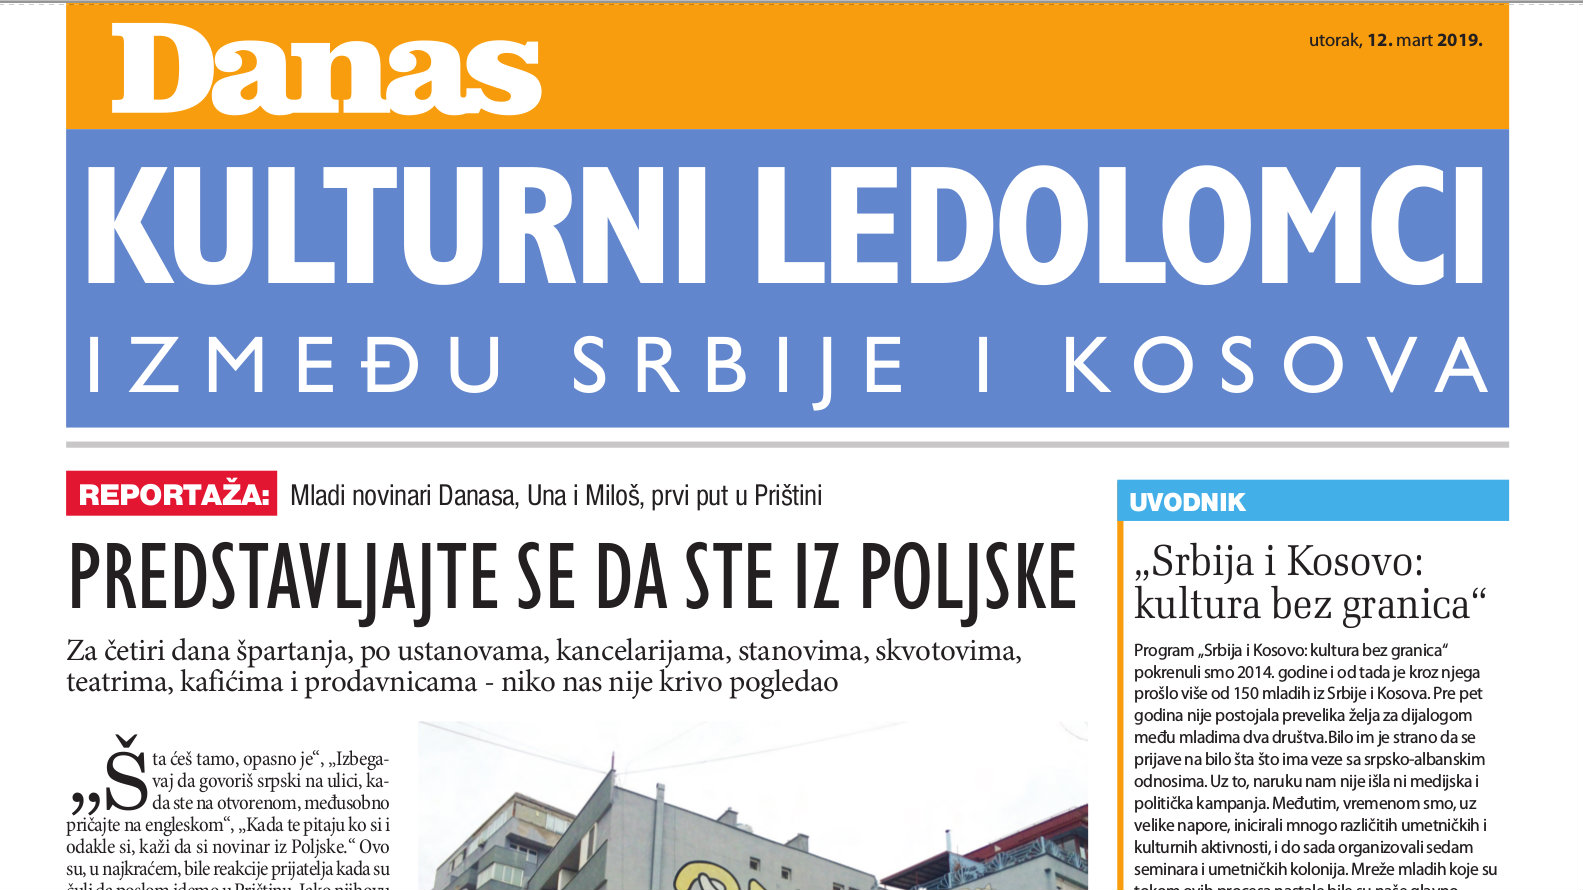 Kulturni ledolomci između Srbije i Kosova (PDF) 1